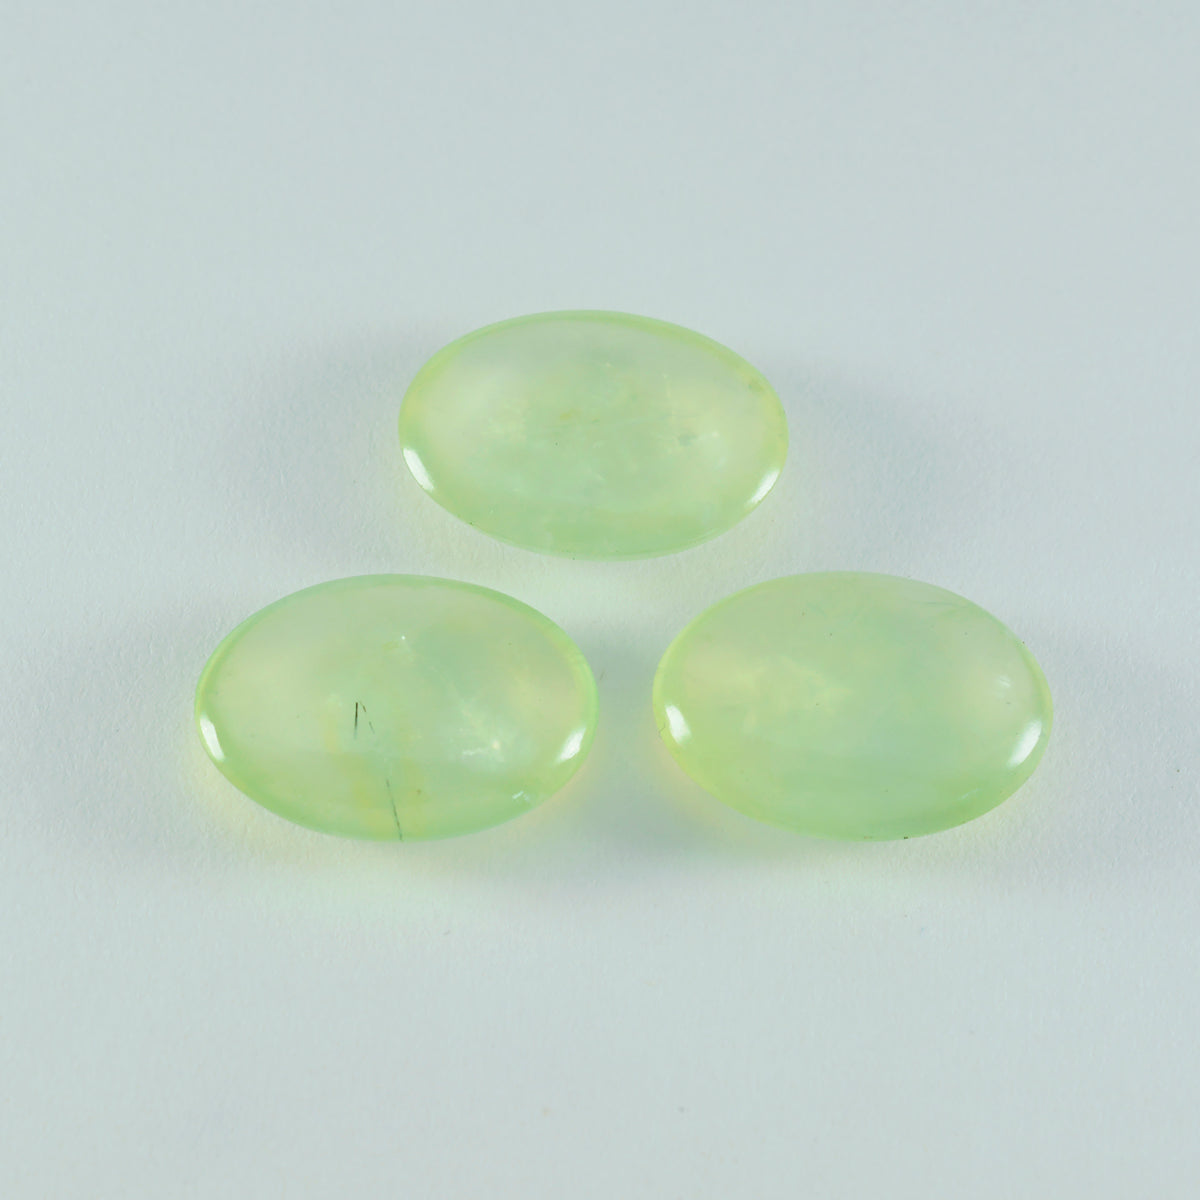 riyogems 1шт зеленый пренит кабошон 10х14 мм овальной формы, камень хорошего качества